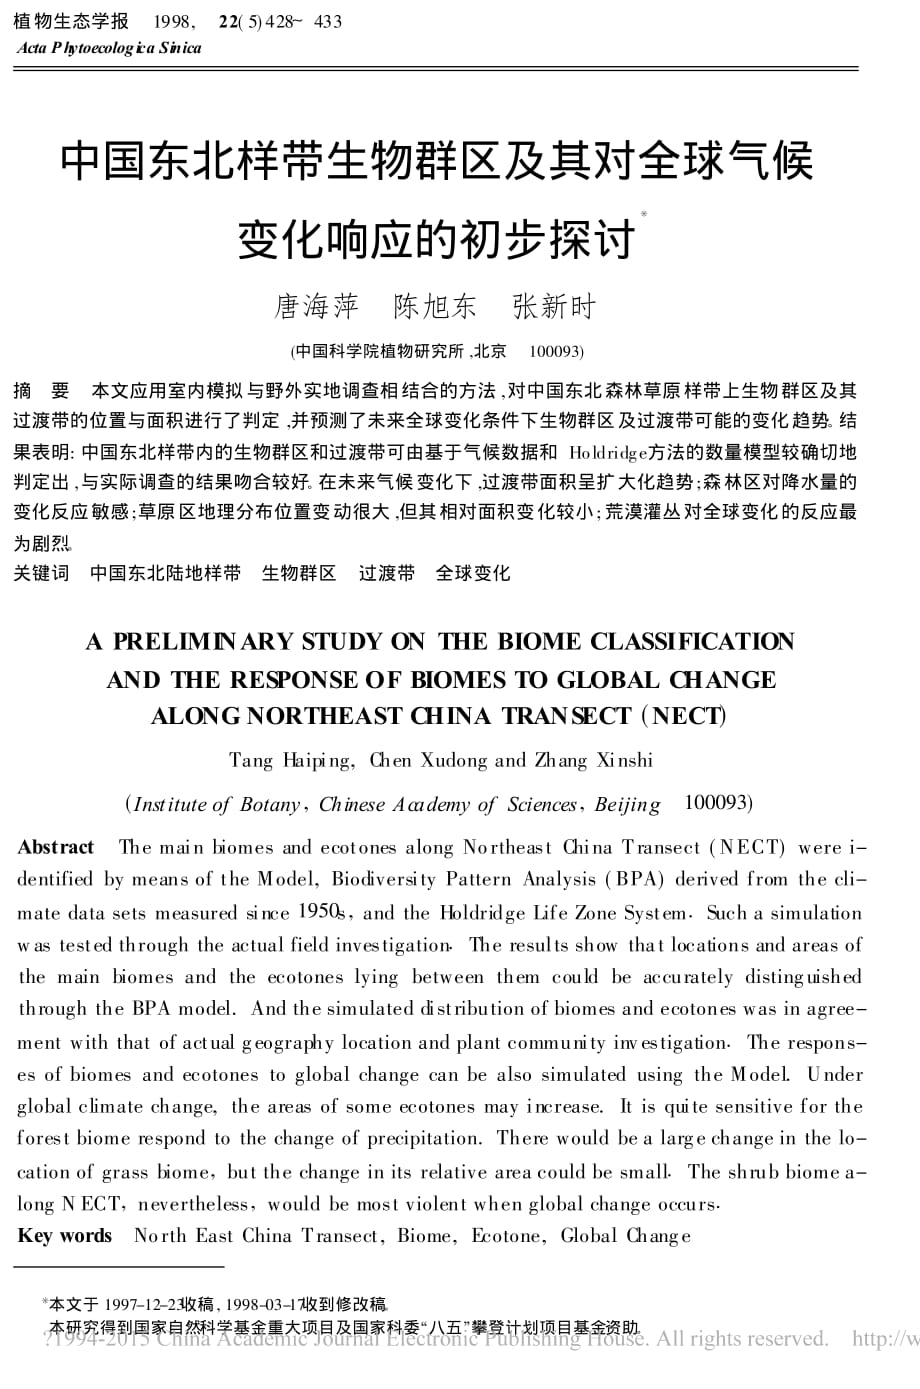 中国东北样带生物群区及其对全球气候变化响应的初步探讨_唐海萍_第1页